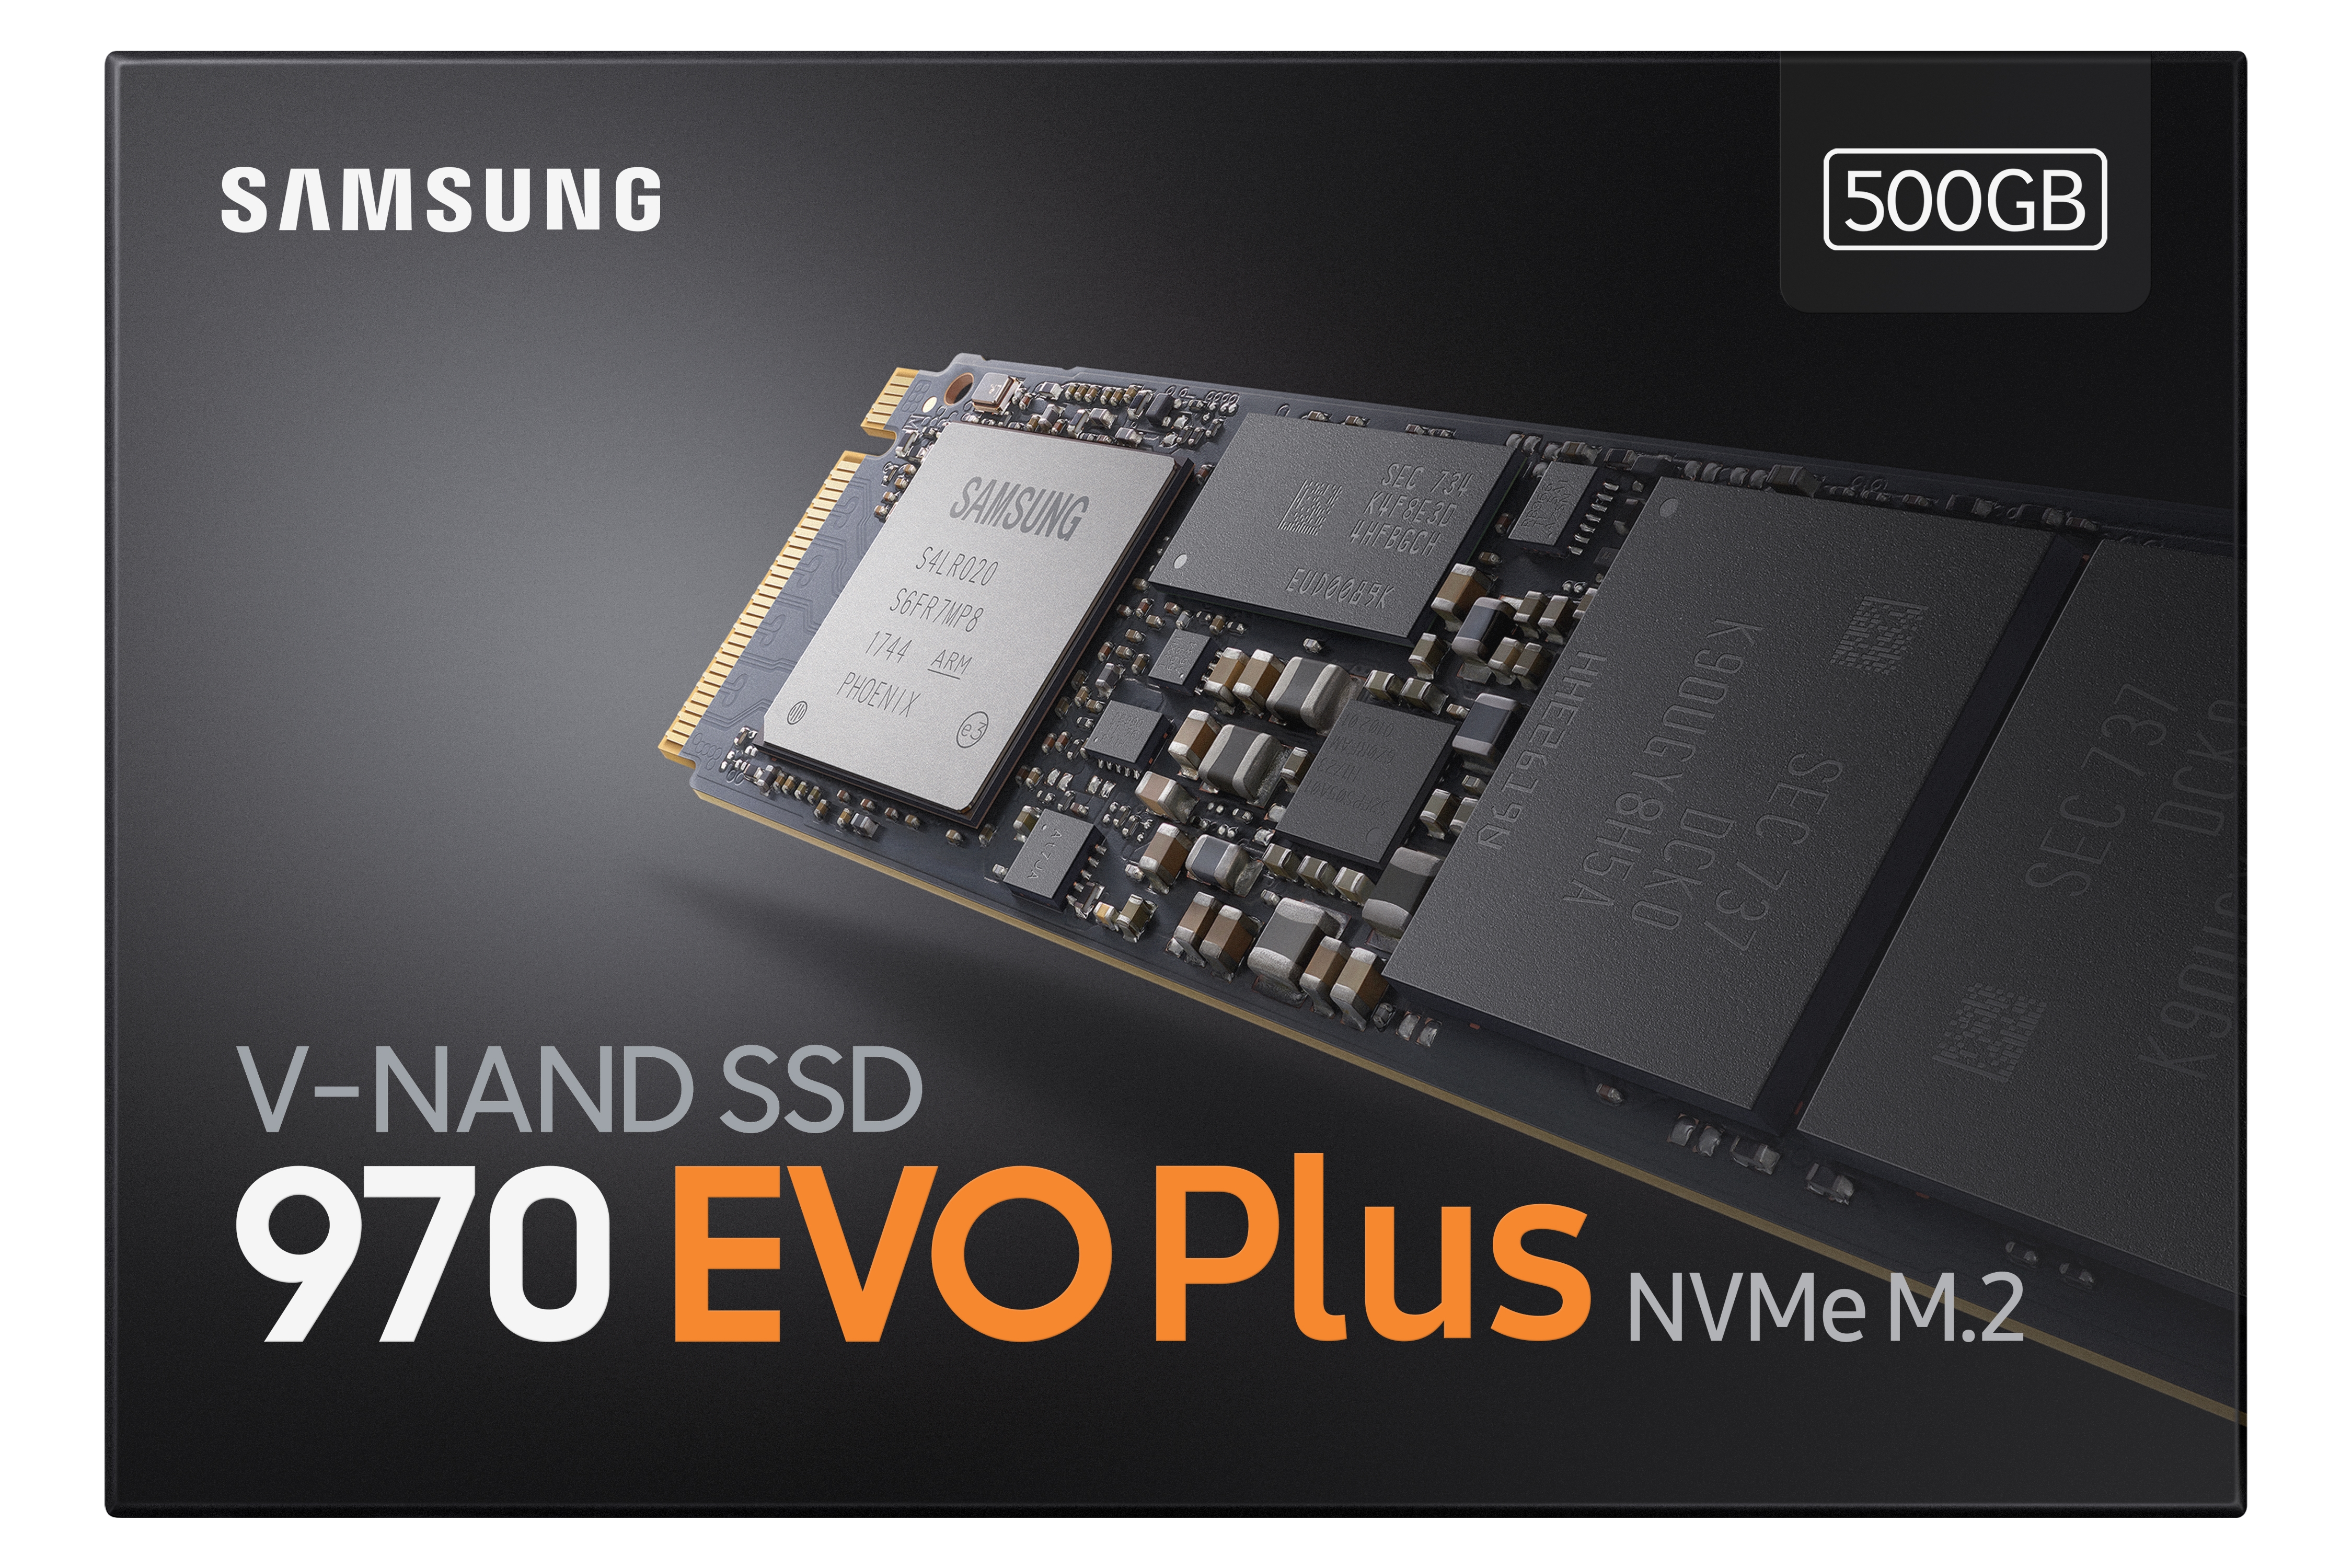 SSD 970 EVO Plus NVMe® M.2 500GB Memory & Storage - MZ-V75S500B/AM